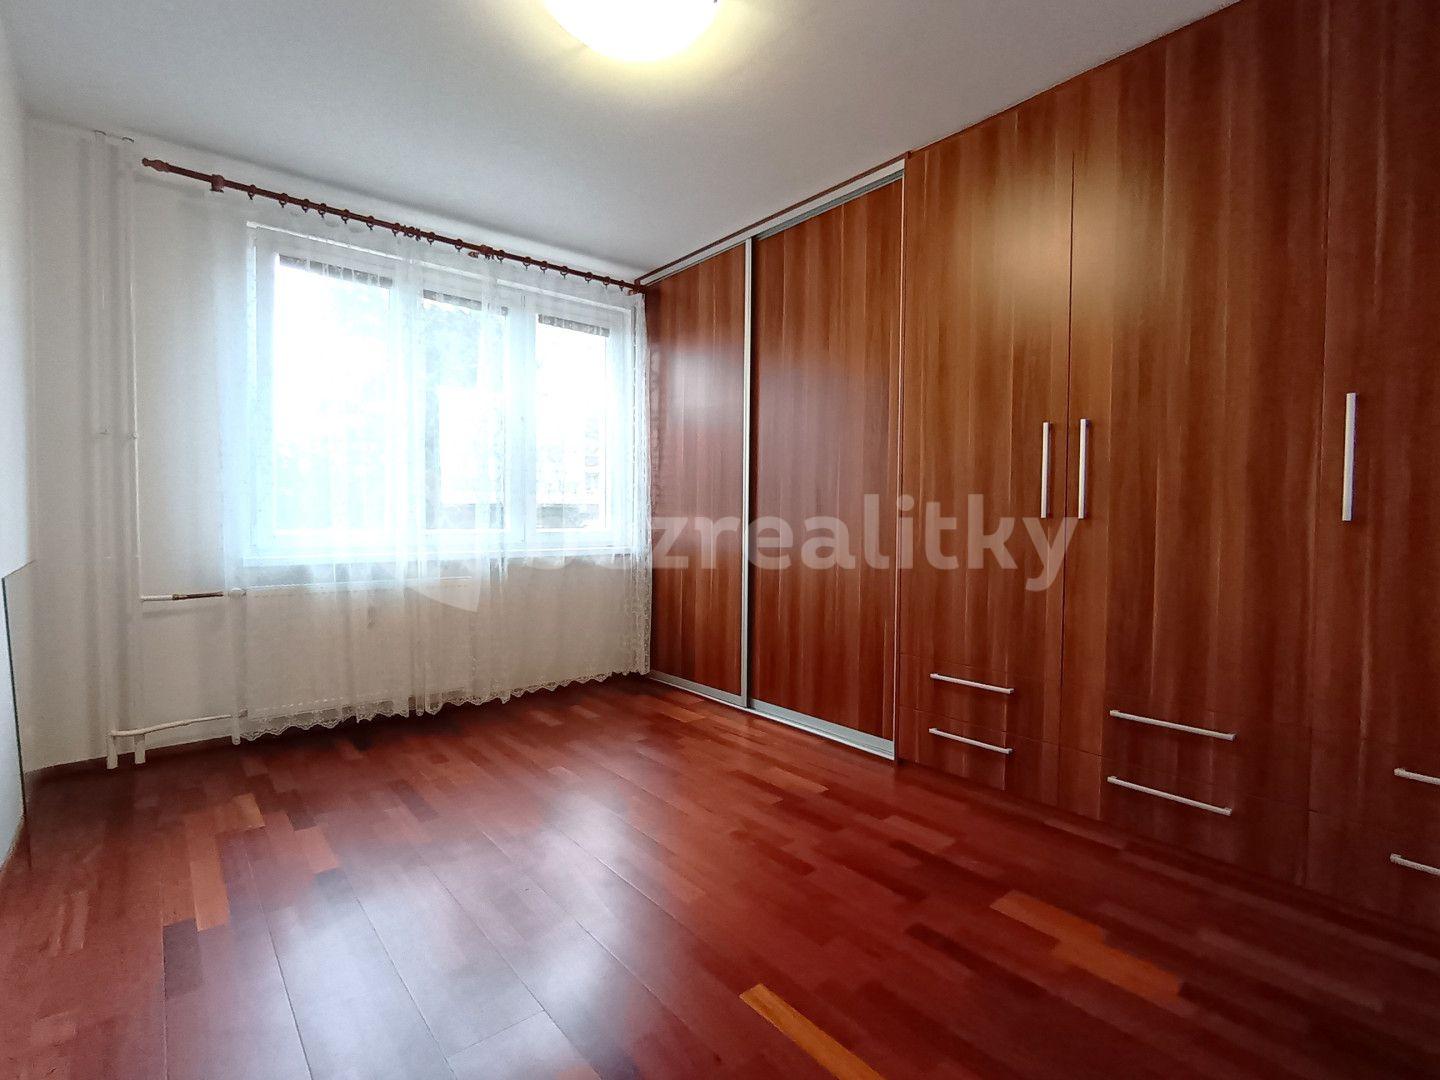 4 bedroom flat for sale, 81 m², Kpt. Nálepky, Karlovy Vary, Karlovarský Region